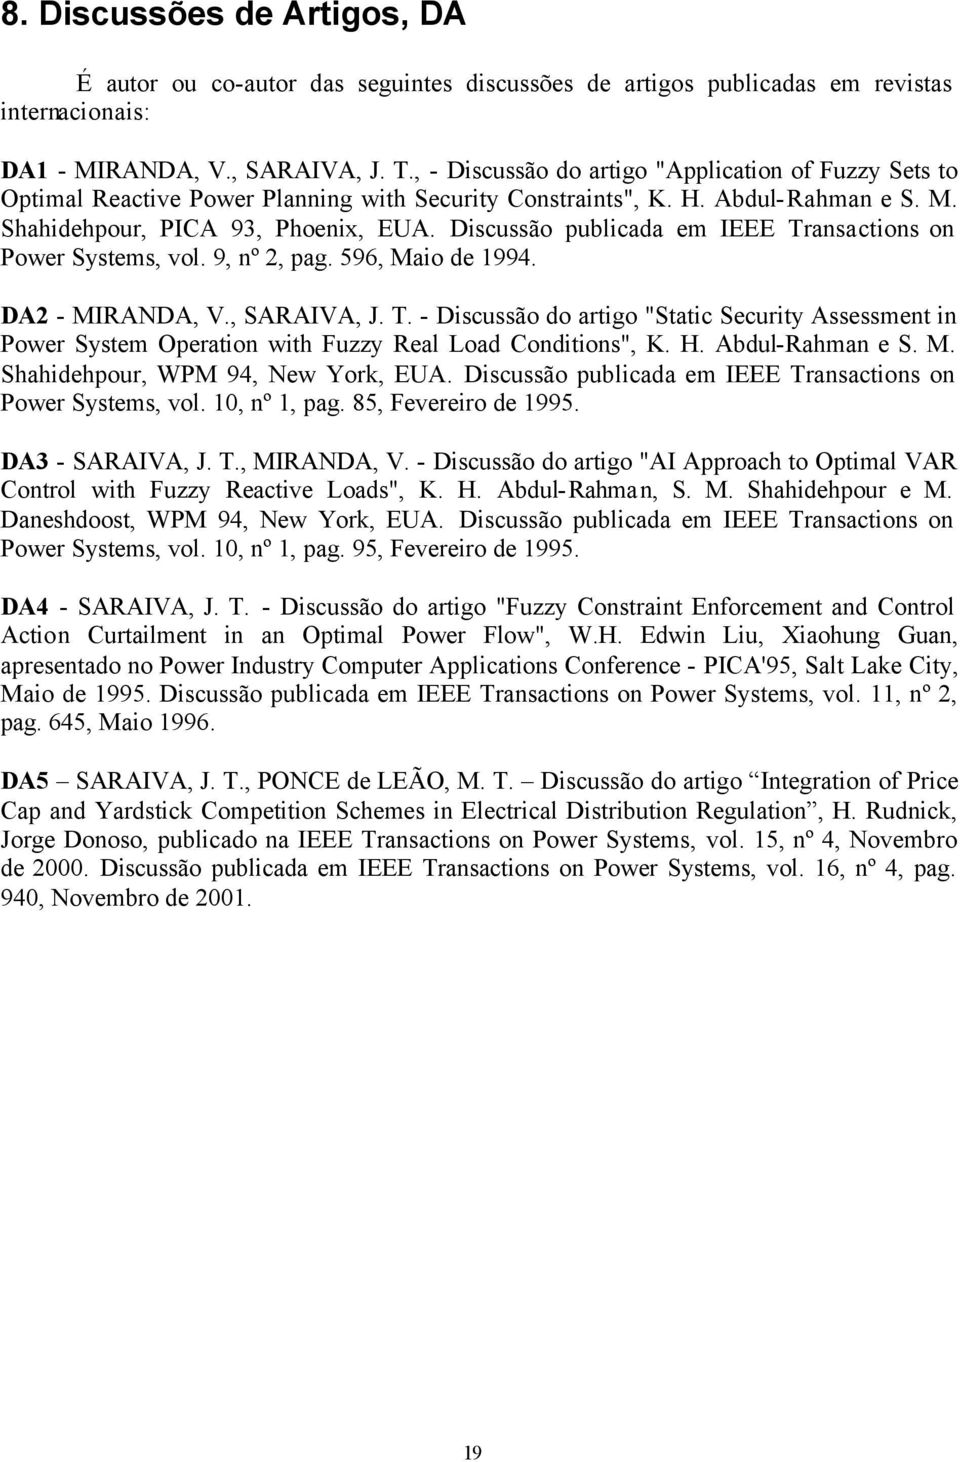 Discussão publicada em IEEE Transactions on Power Systems, vol. 9, nº 2, pag. 596, Maio de 1994. DA2 - MIRANDA, V., SARAIVA, J. T. - Discussão do artigo "Static Security Assessment in Power System Operation with Fuzzy Real Load Conditions", K.